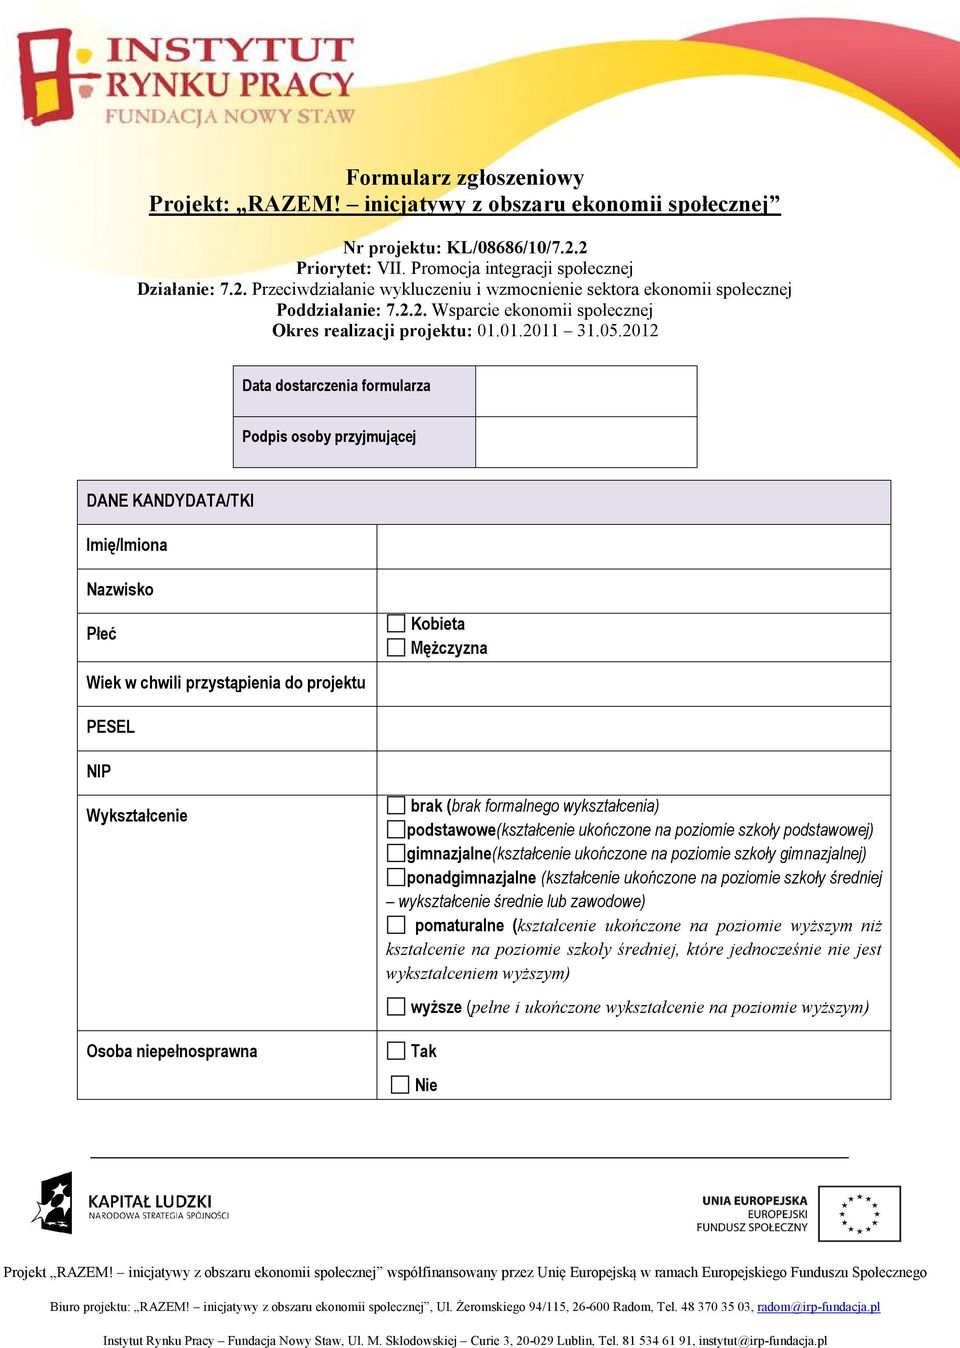 2012 Data dostarczenia formularza Podpis osoby przyjmującej DANE KANDYDATA/TKI Imię/Imiona Nazwisko Płeć Wiek w chwili przystąpienia do projektu Kobieta Mężczyzna PESEL NIP Wykształcenie Osoba